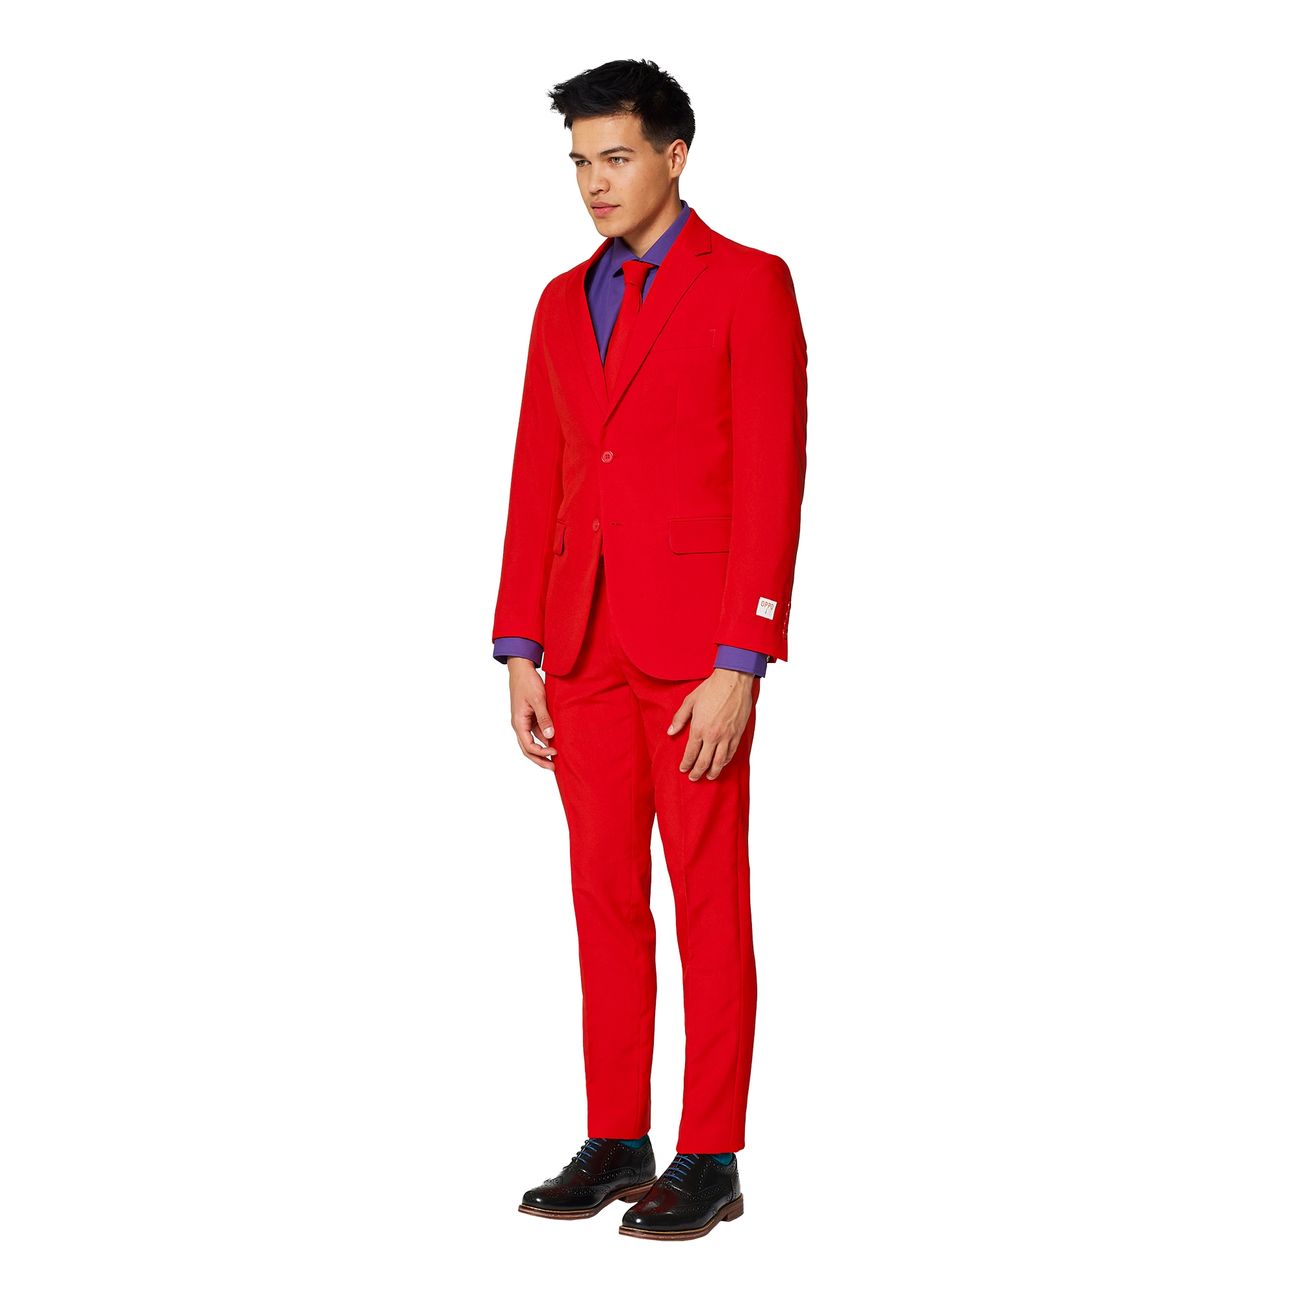 opposuits-red-devil-kostym-16980-12